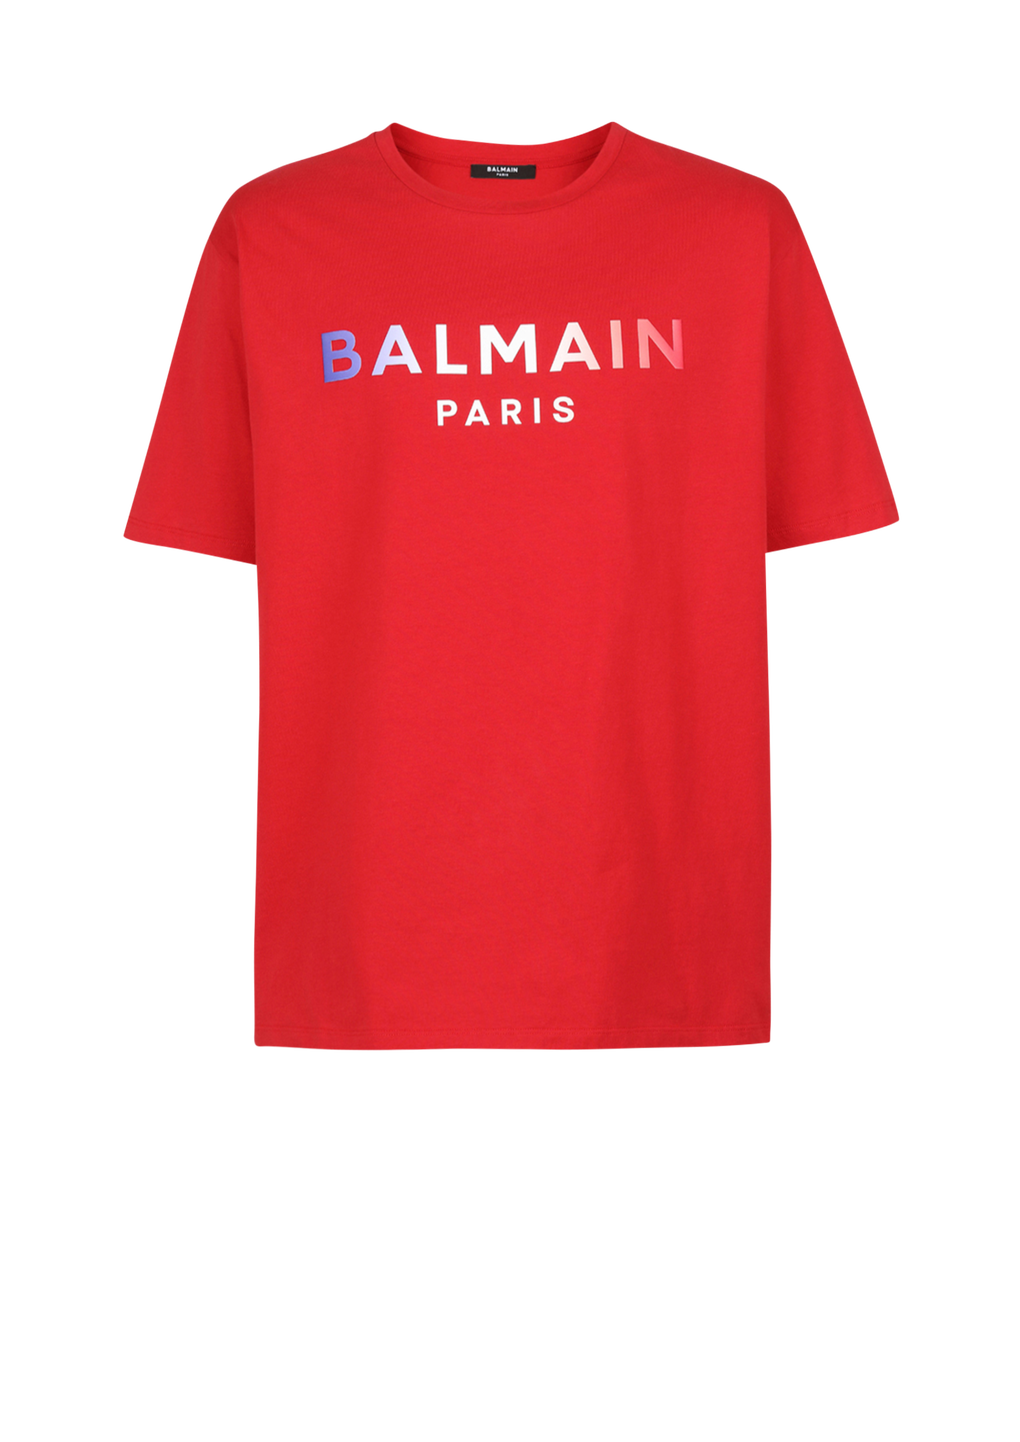 HIGH SUMMER CAPSULE - T-shirt en coton imprimé tie and dye logo Balmain Paris, rouge, hi-res